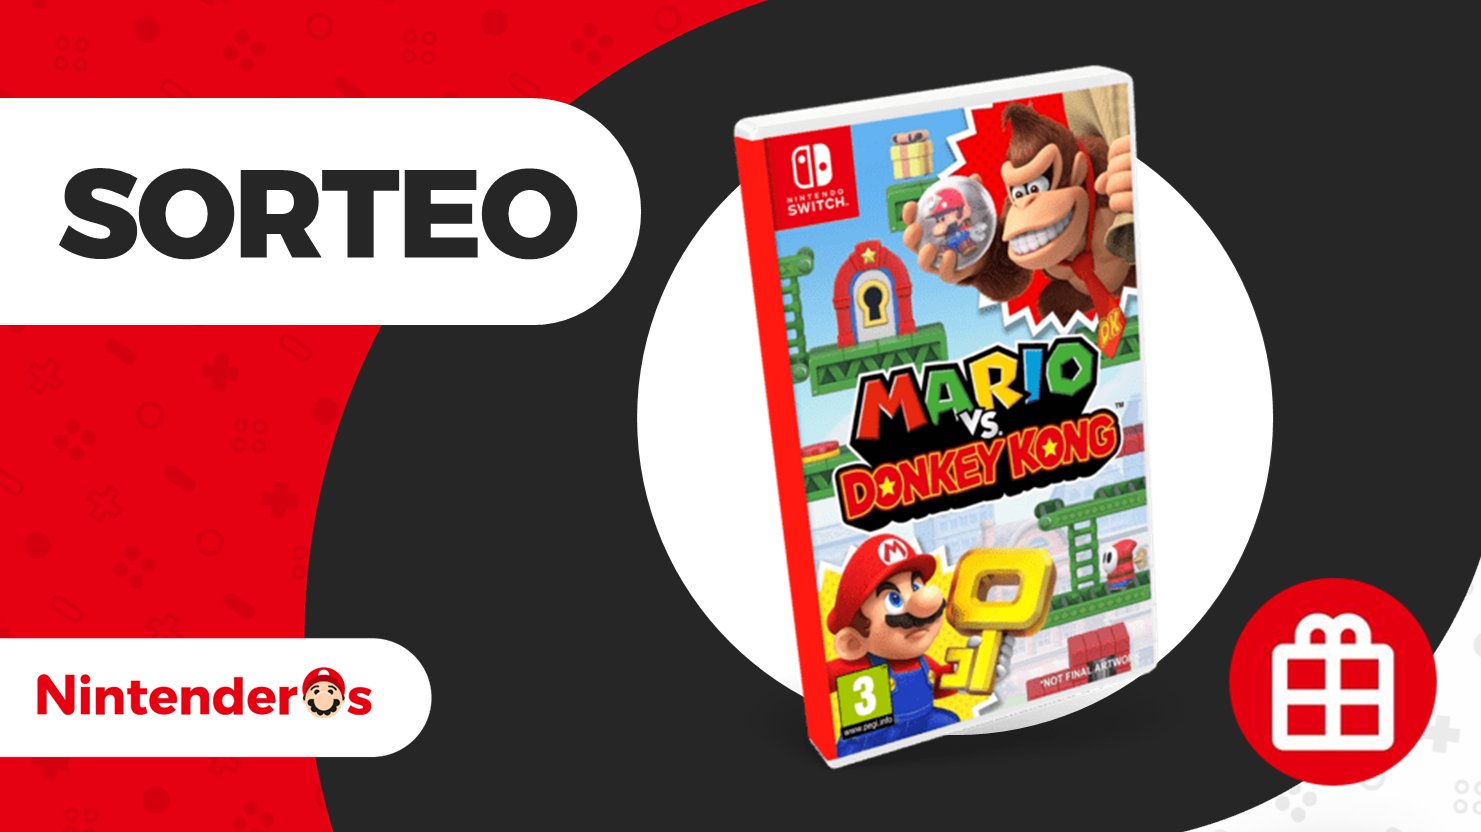 RESULTADOS] Gana una Nintendo Switch Super Smash Bros. Ultimate edition -  Meristation